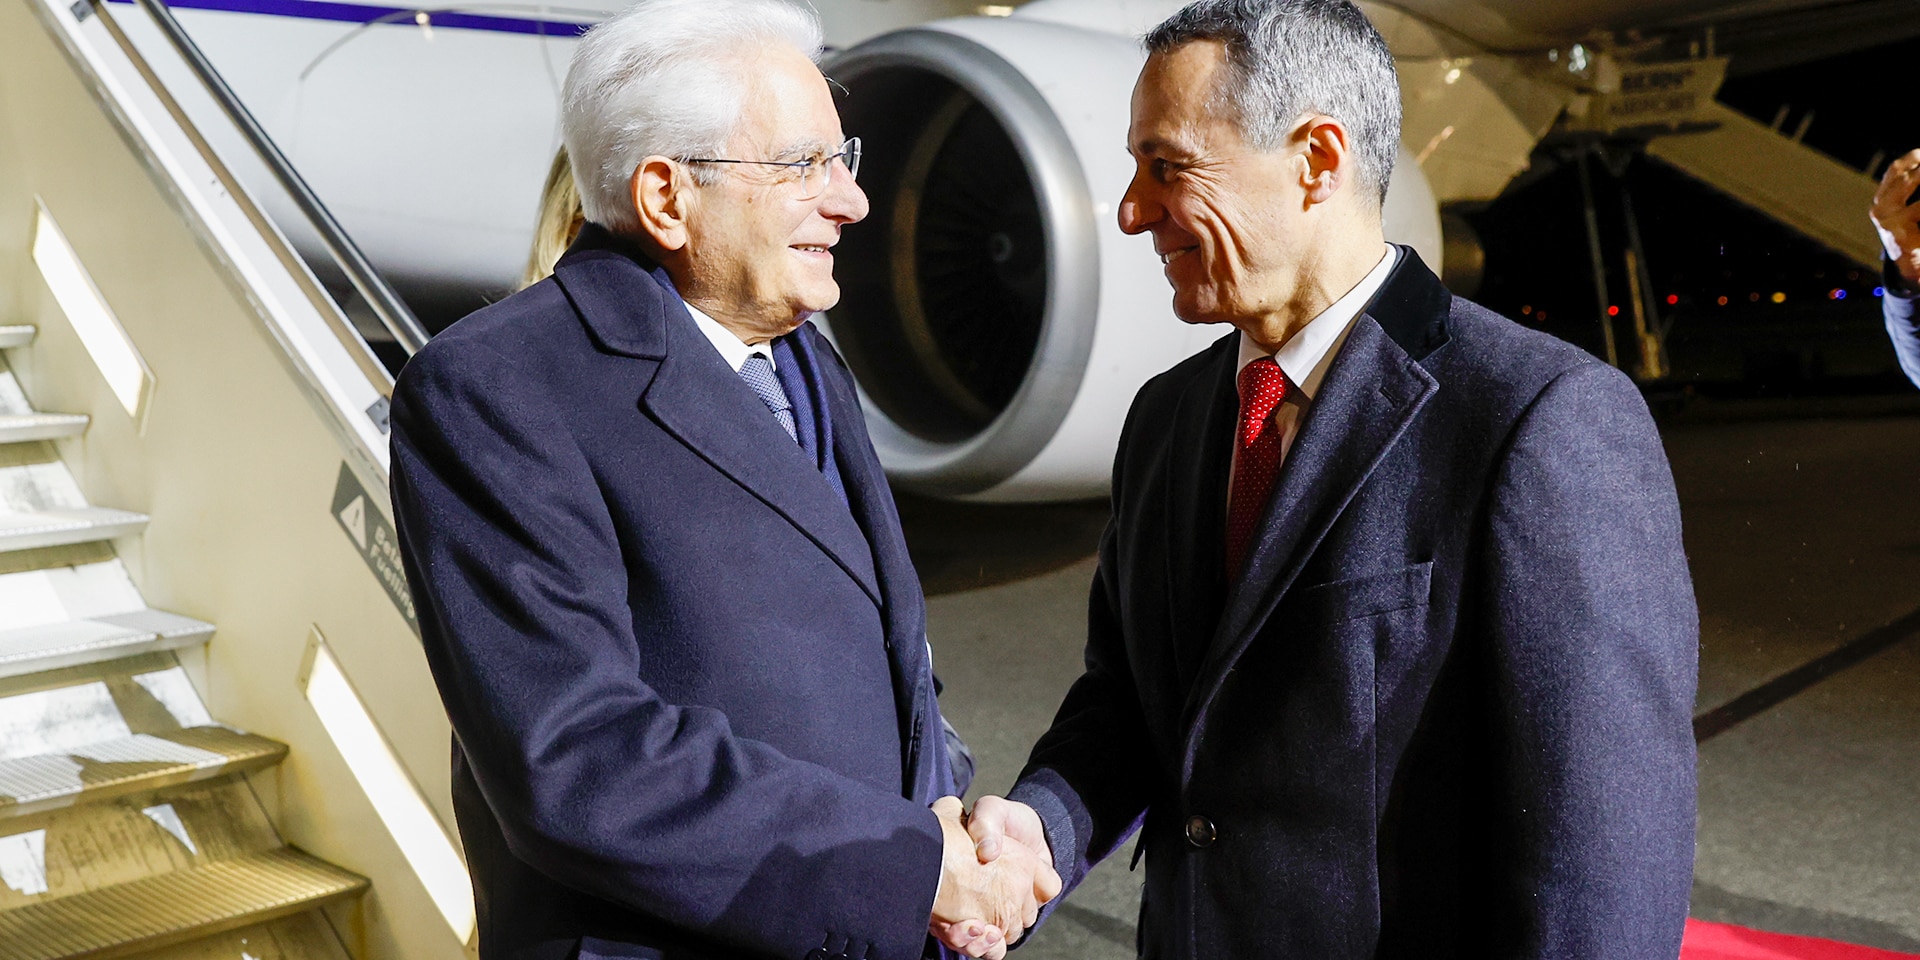 Il presidente della Confederazione Ignazio Cassis accoglie il presidente della Repubblica italiana Sergio Mattarella in aeroporto a Belp.